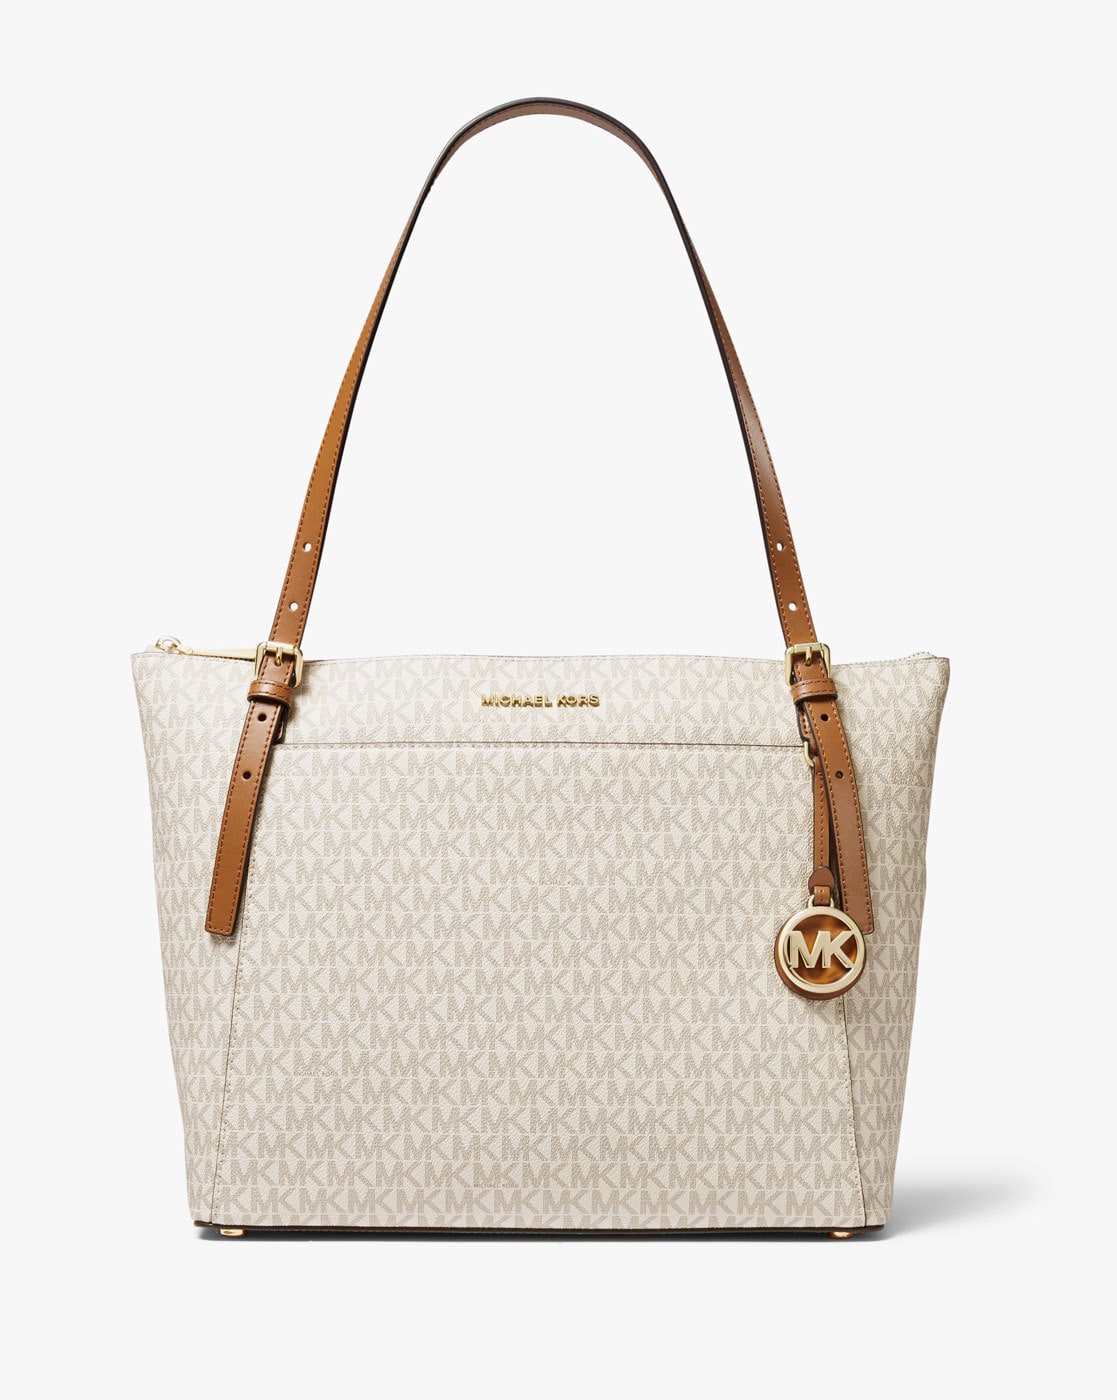 Buy Off-White Handbags for Women by Michael Kors Online 